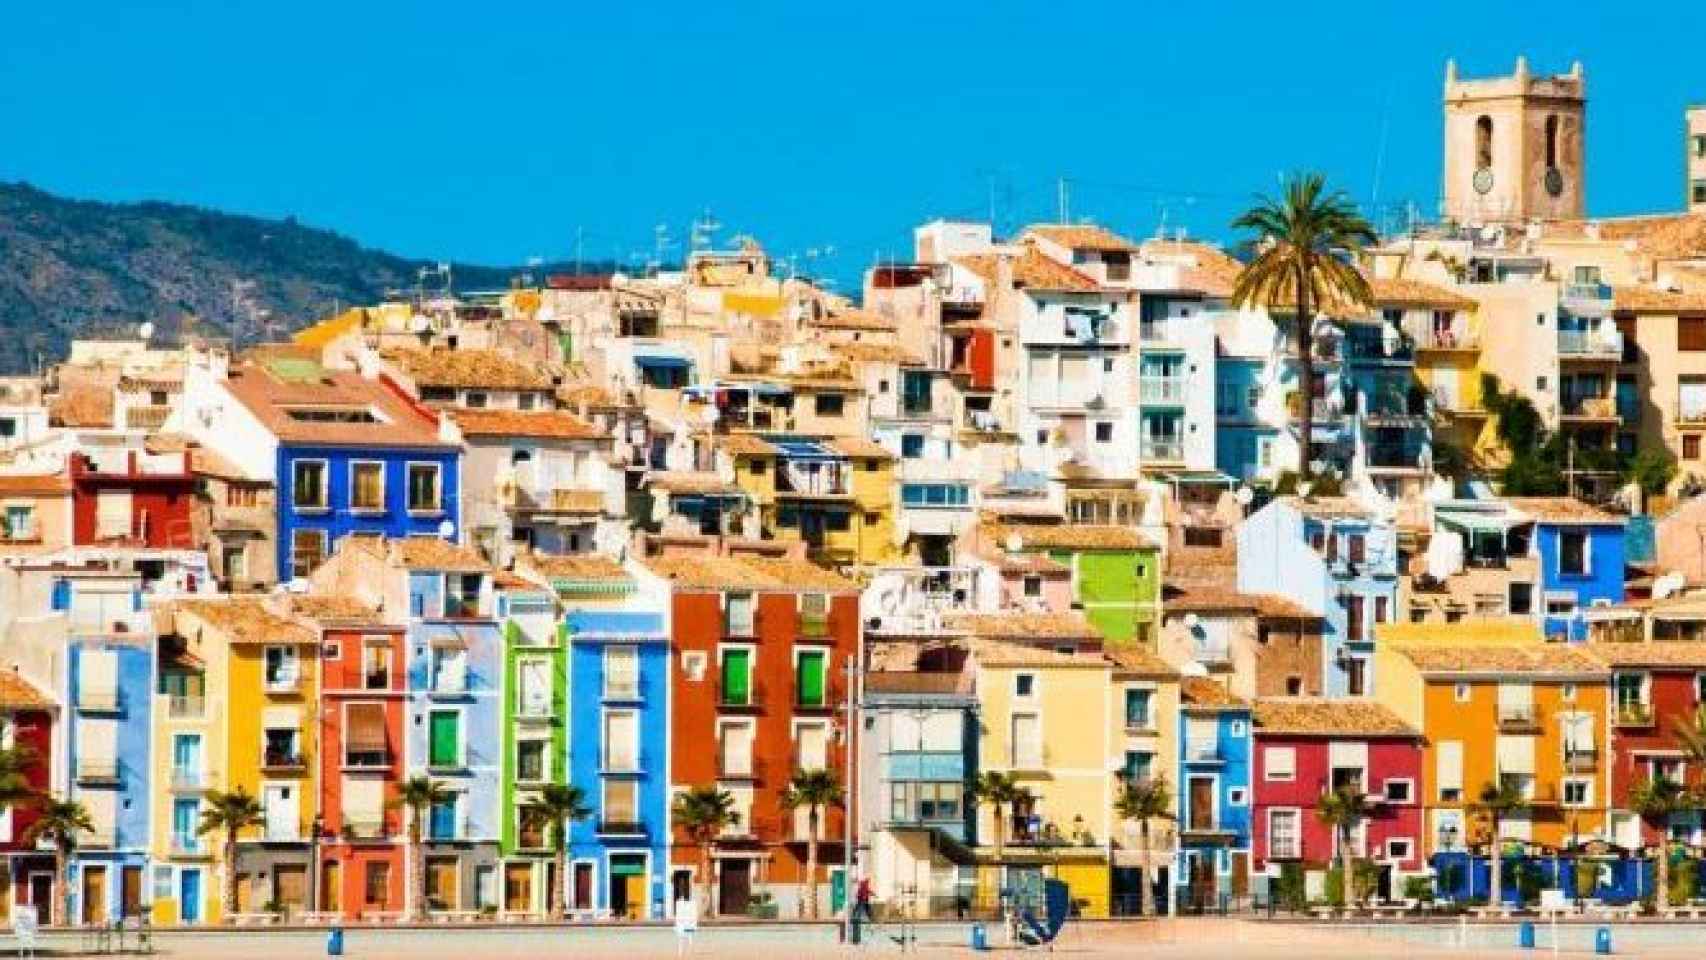 Las famosas casitas de colores que dan al litoral de La Vila Joiosa.